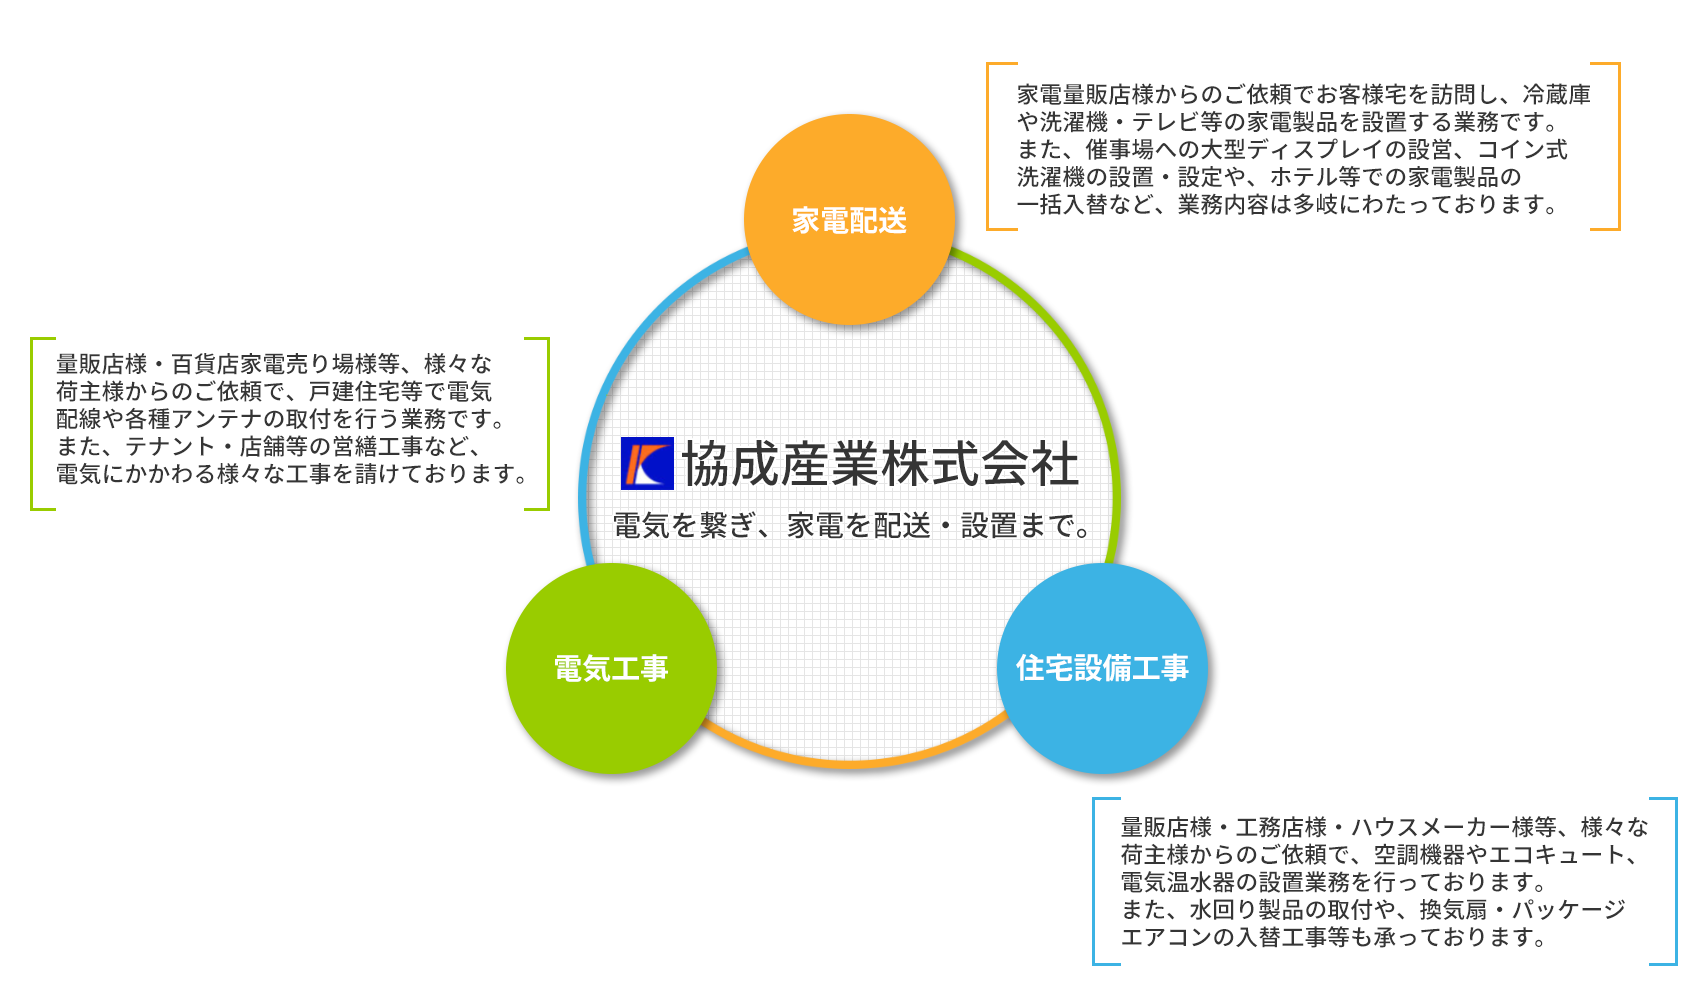 協成産業株式会社３つの事業の柱のイメージ図